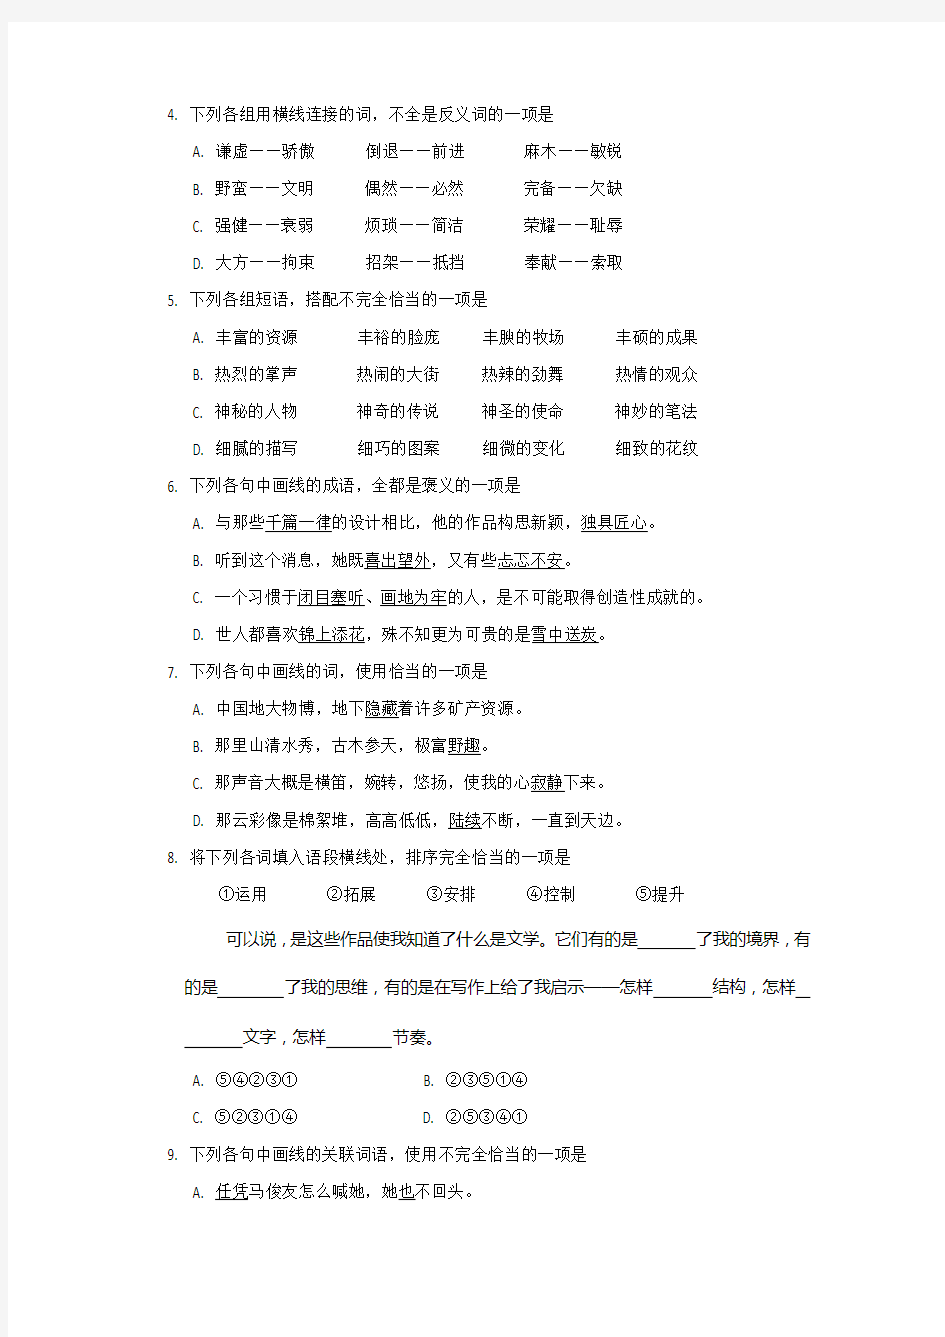 2016年高考-汉语文试卷及答案